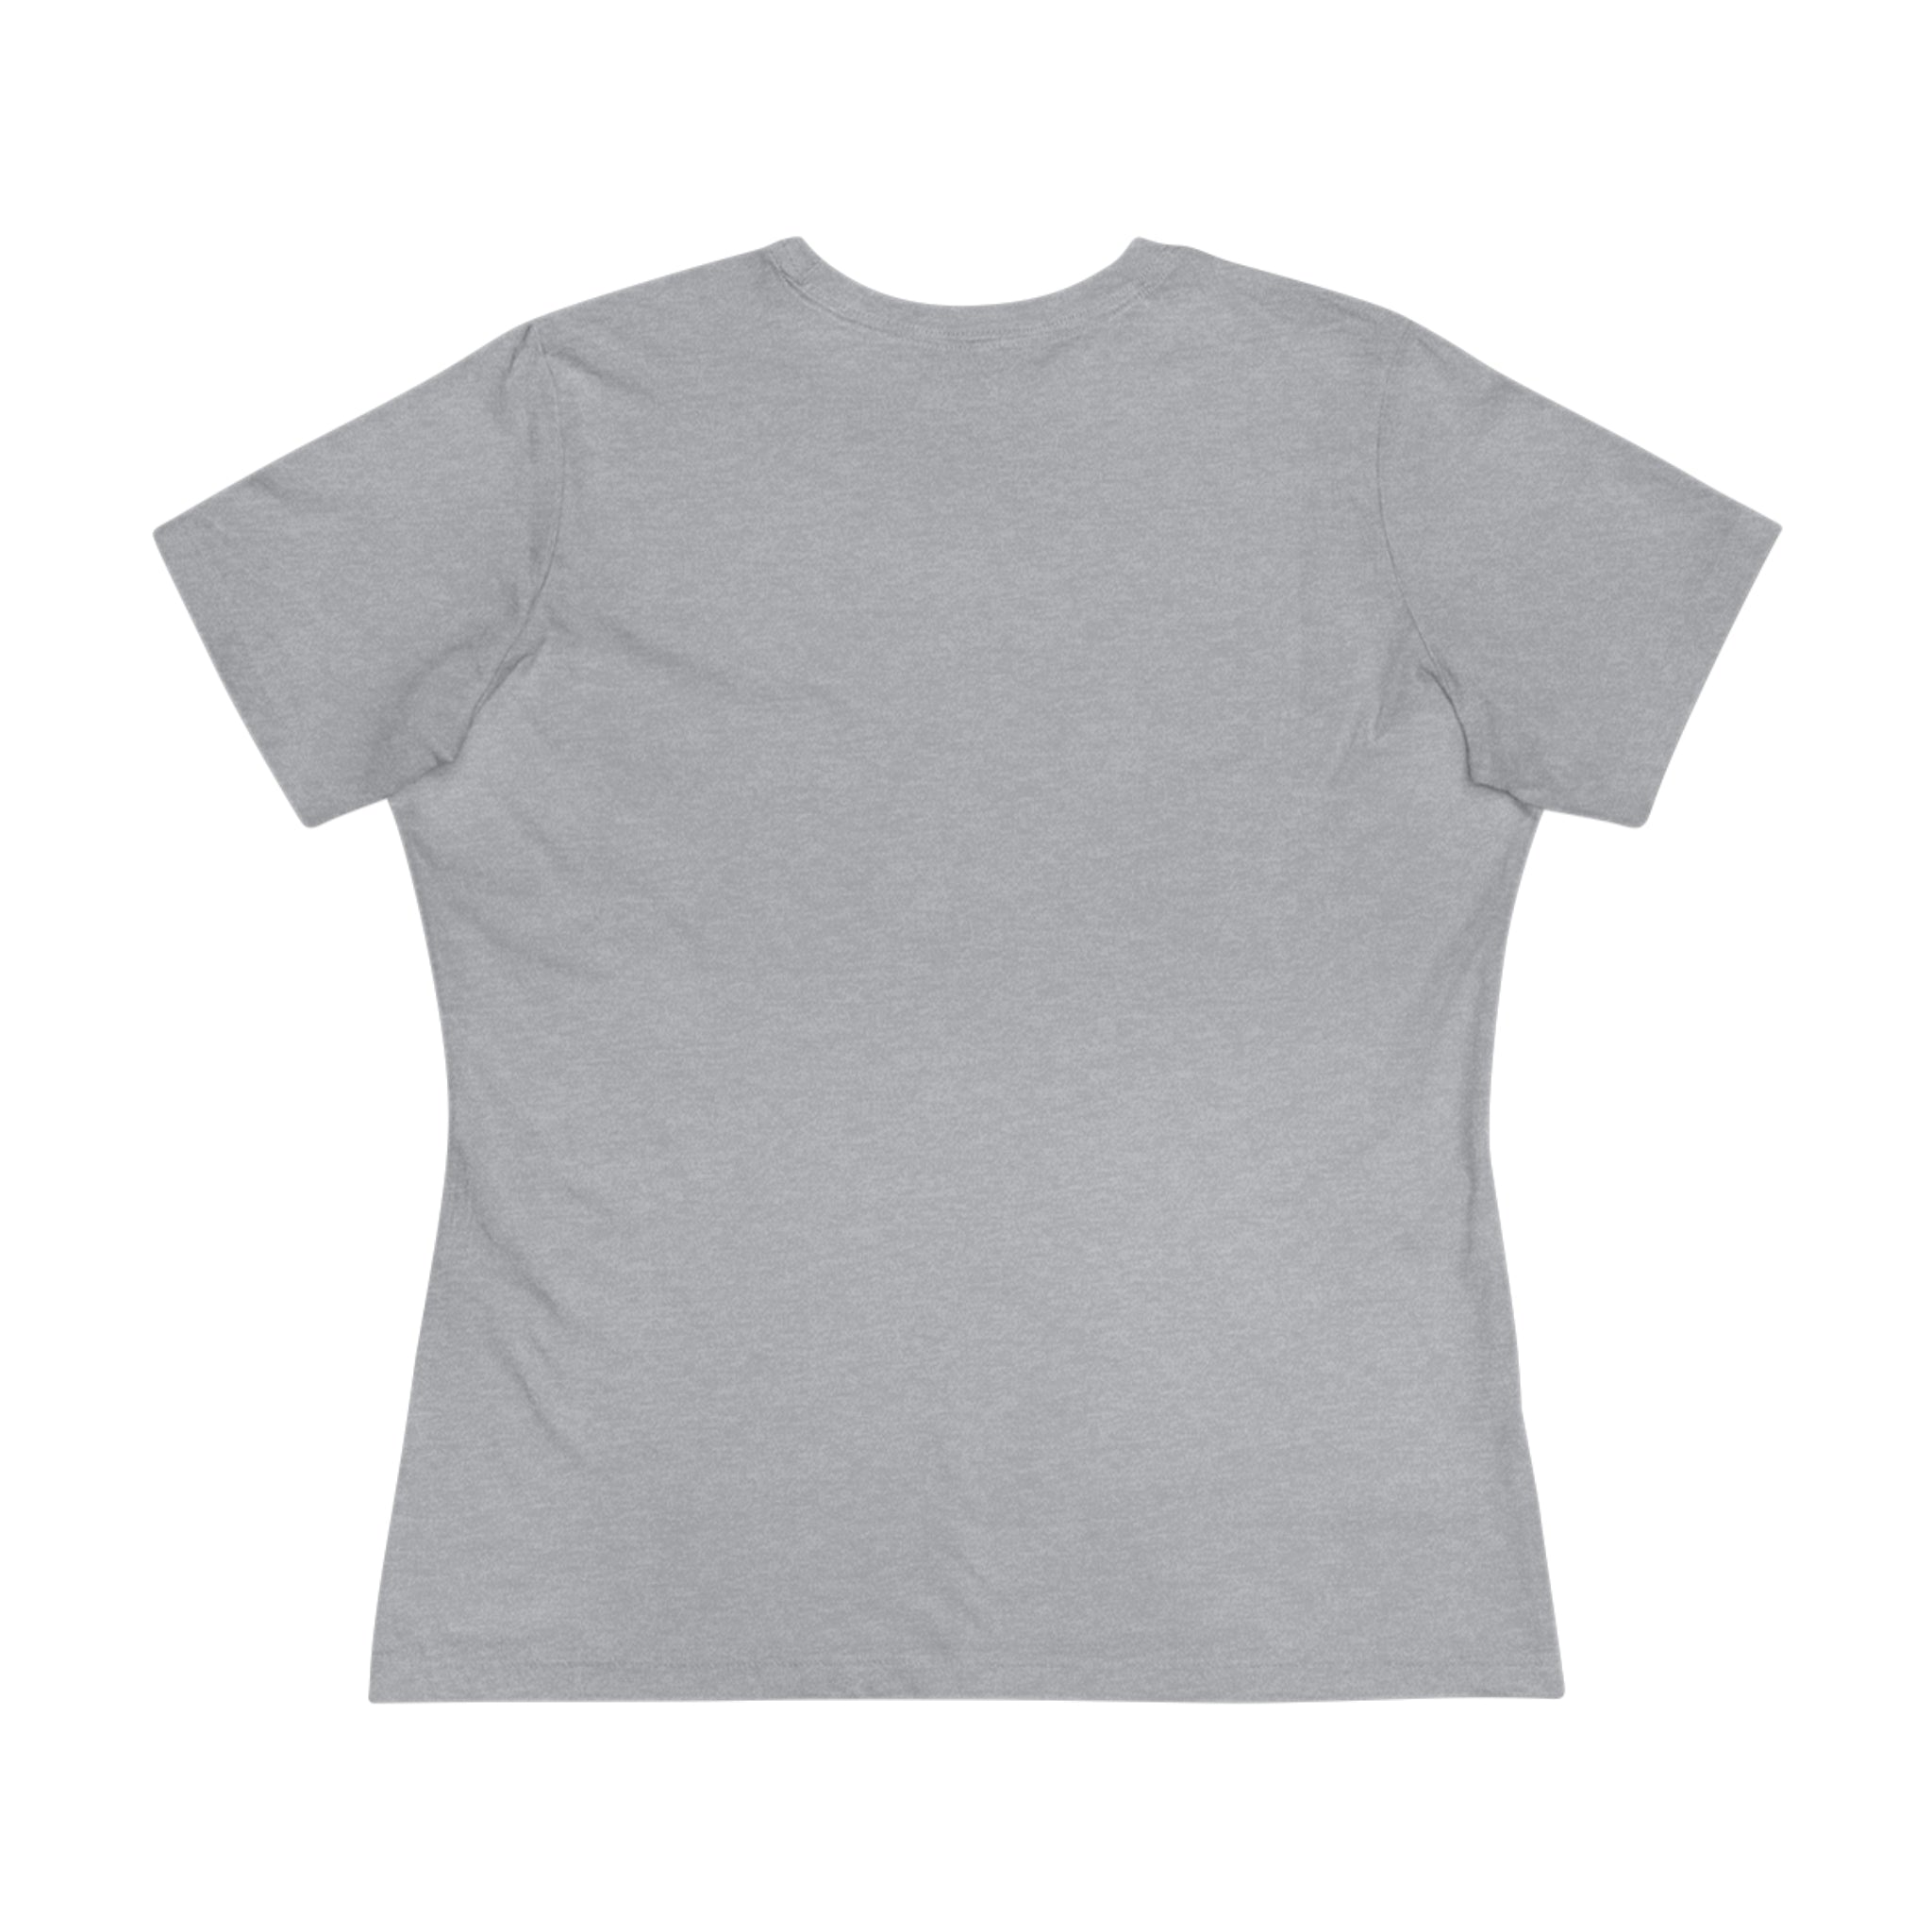 Family Love Women's Cotton Tee, Crew Neck T-shirt, Regular Fit, Unisex Design, DTG Print, Men's Women's Clothing